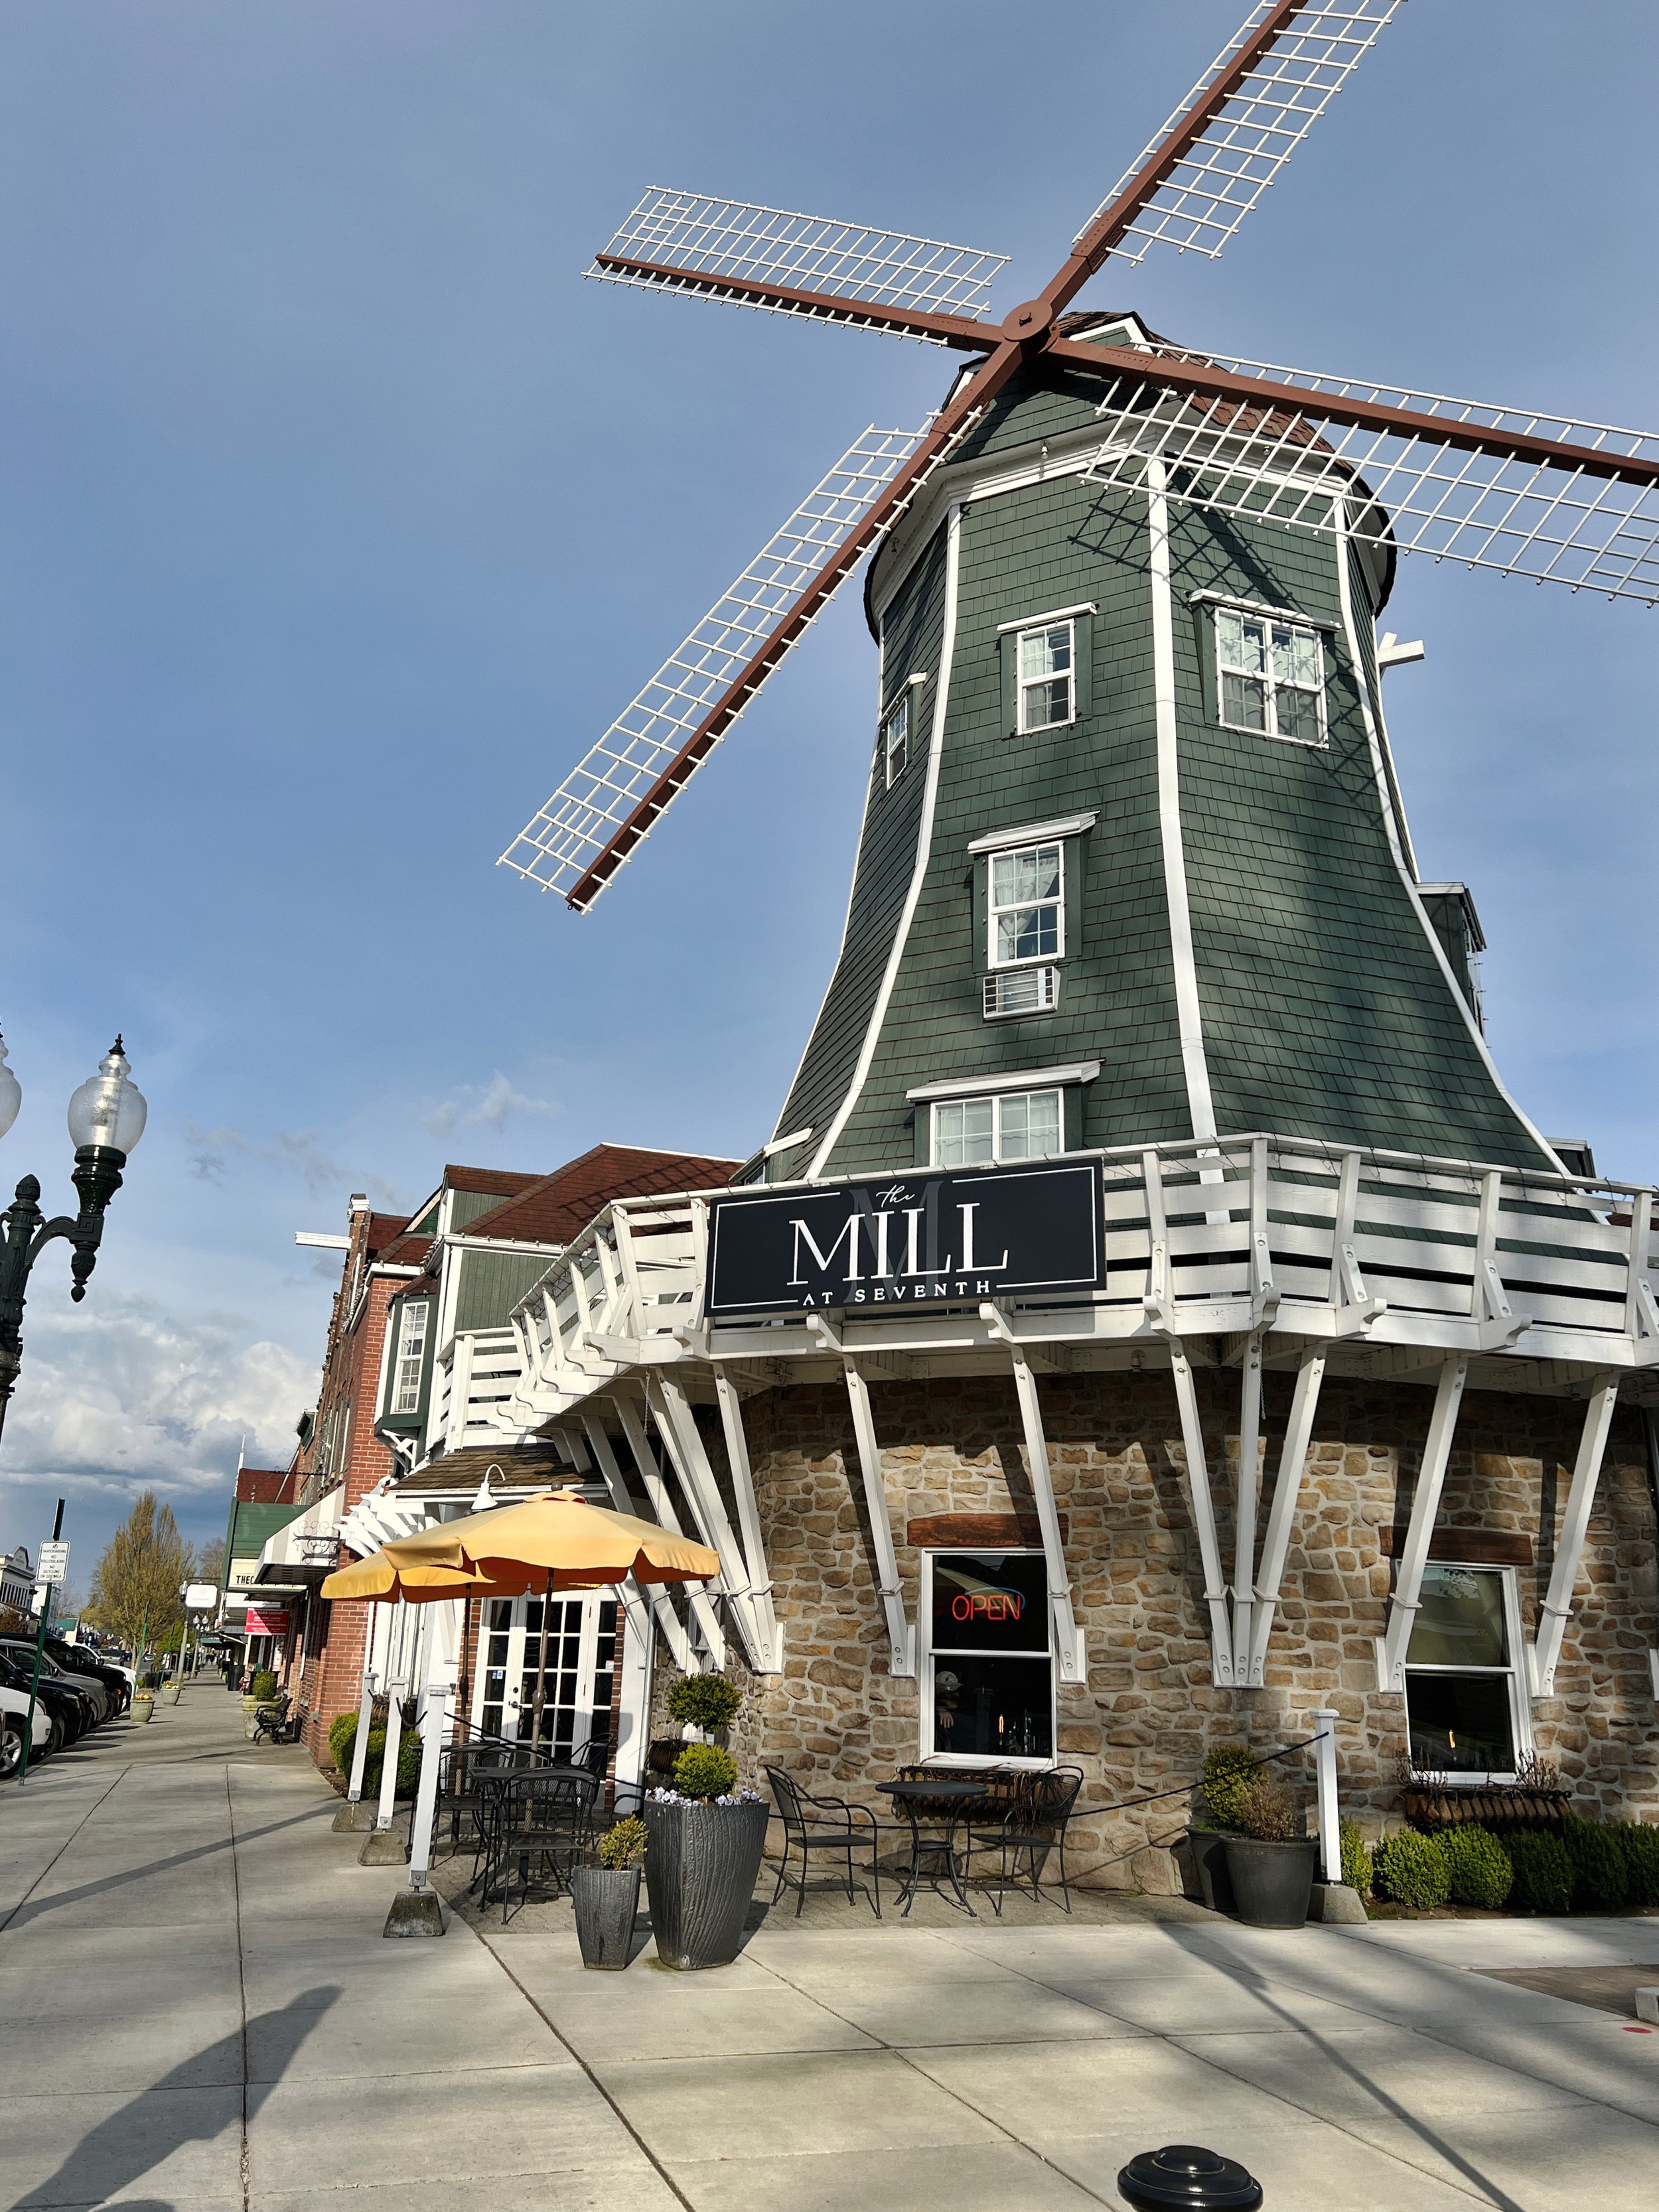 Dutch windmill in Lynden Washington